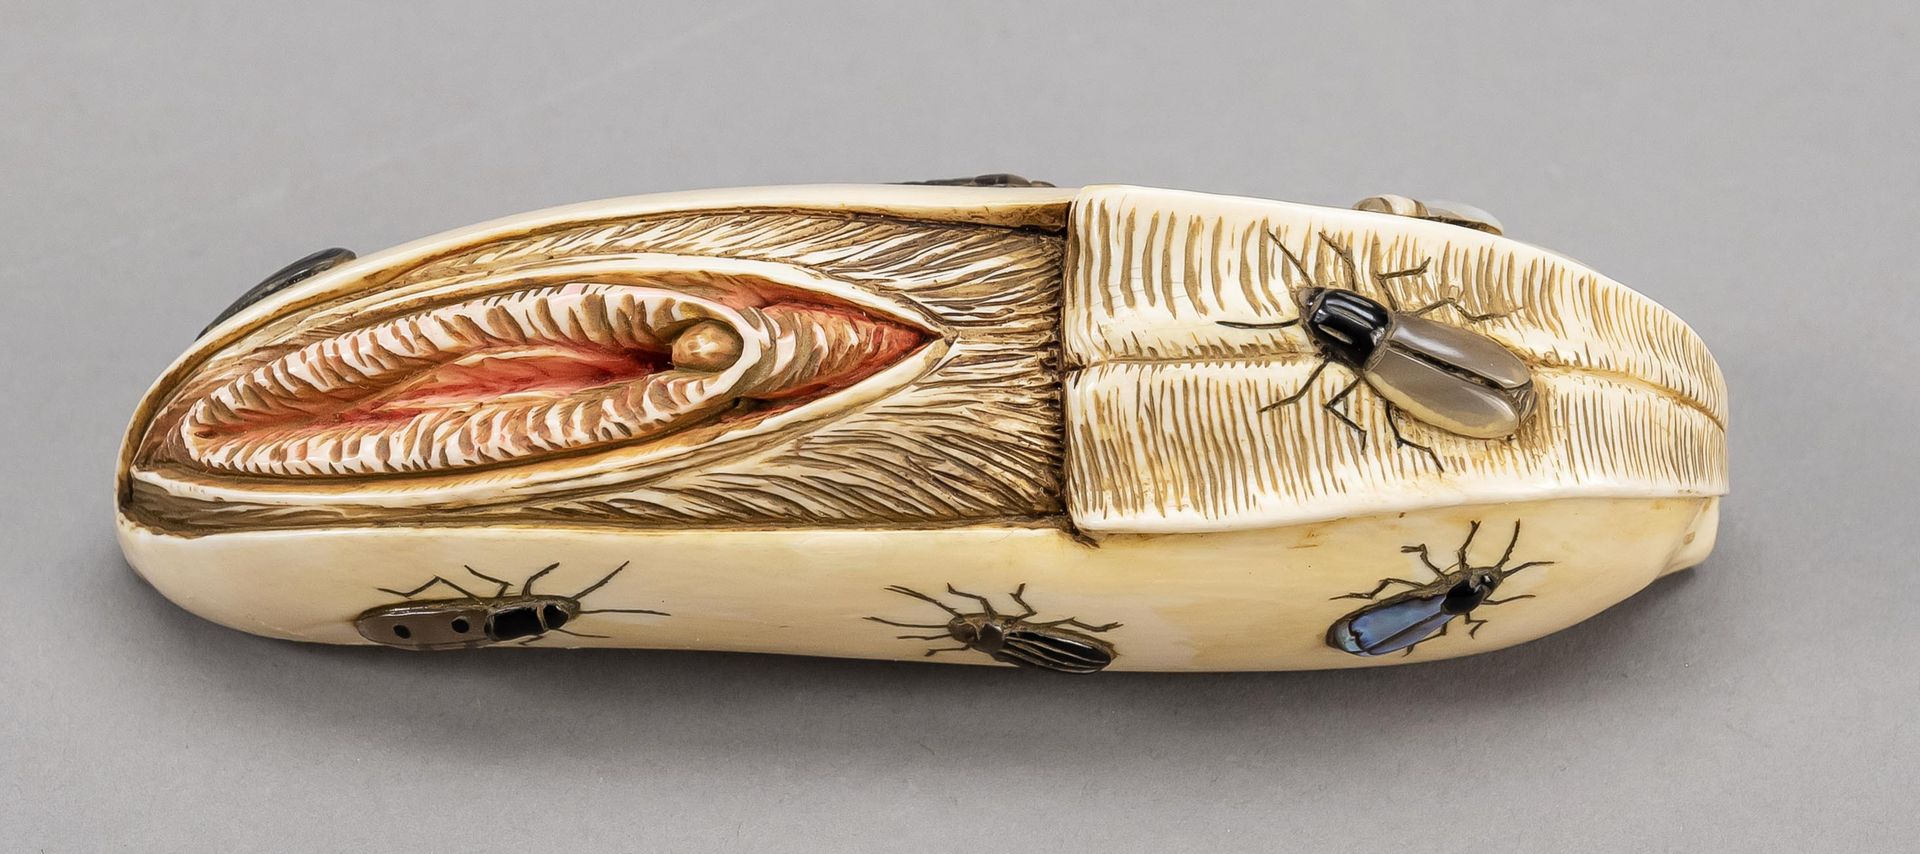 Null 暴露在外阴下的部分剥皮的香蕉形状的色情柴山大和服，日本，约1900年（明治）。逼真的，完全可塑的水果表现，象牙雕刻，镶嵌珍珠母和其他材料的各种昆虫，长&hellip;